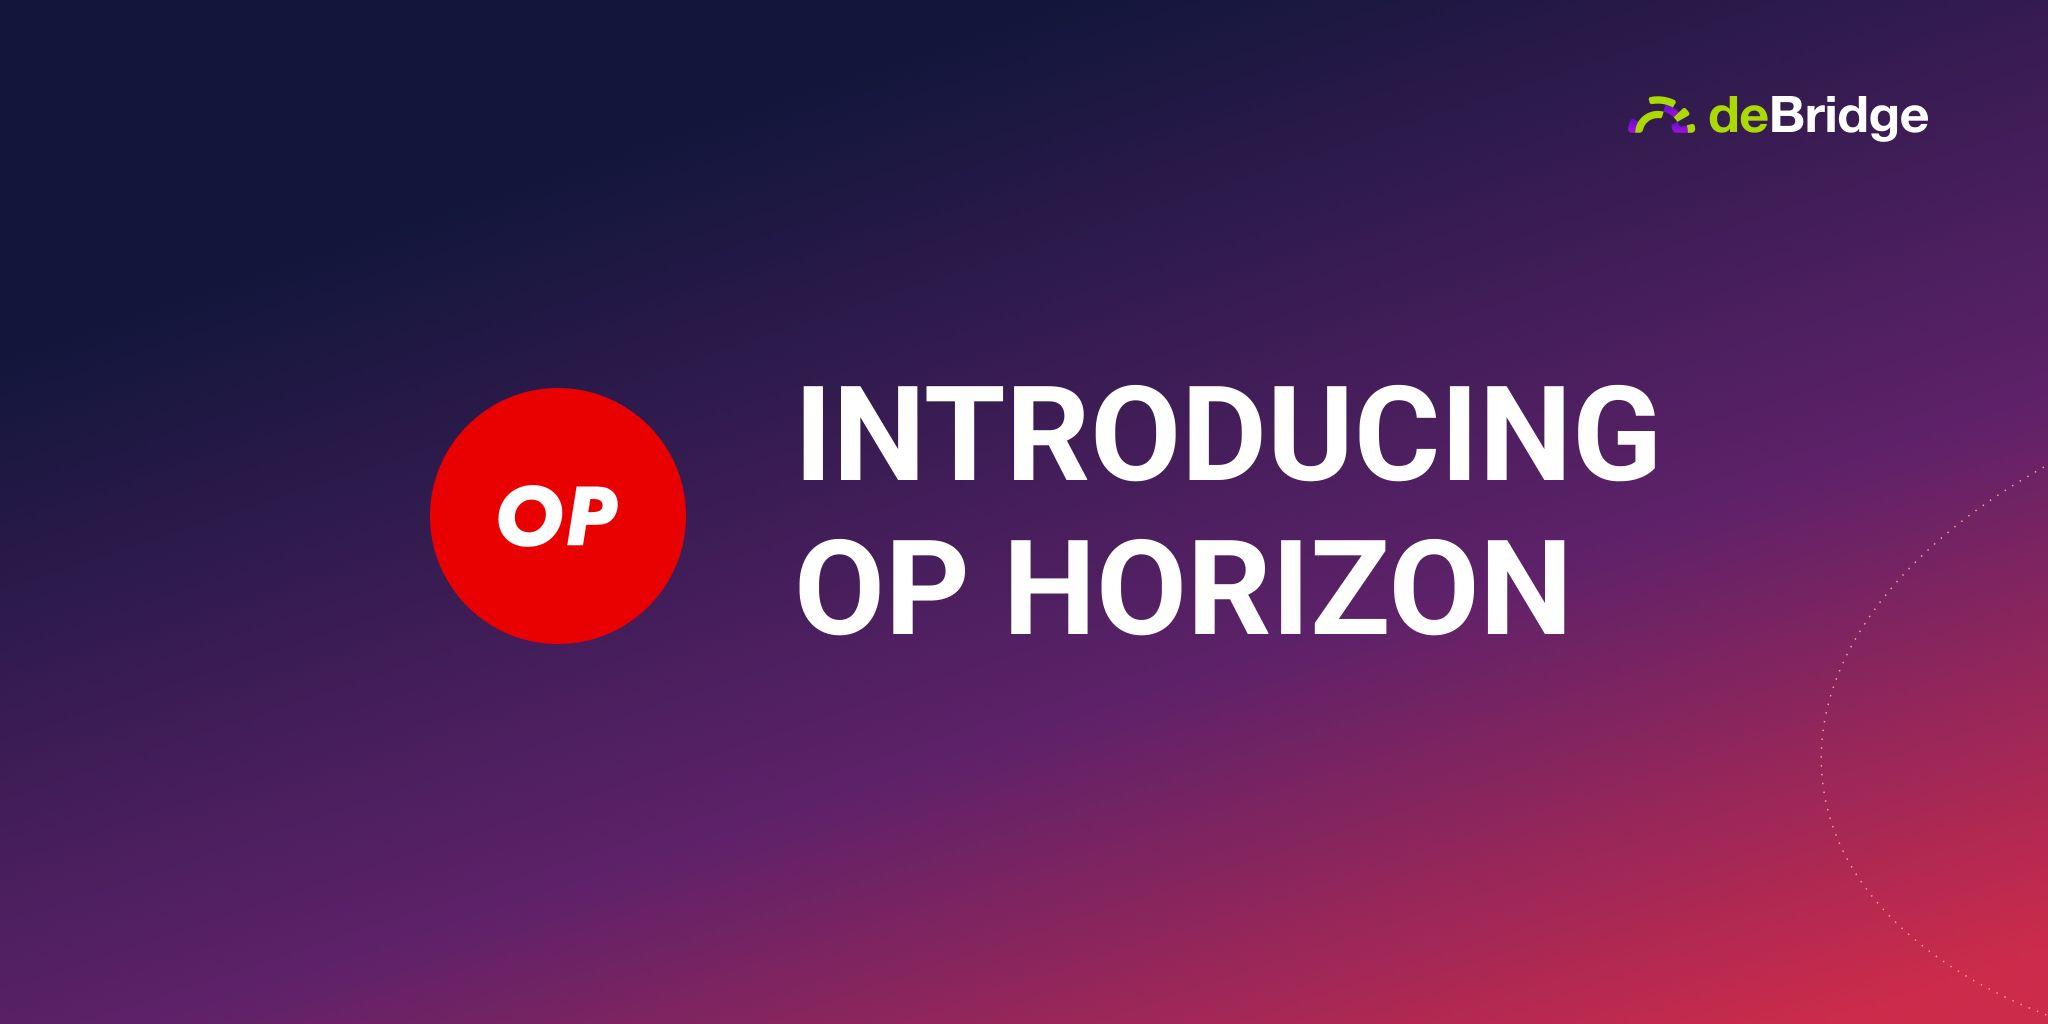 OP Horizon is now live!